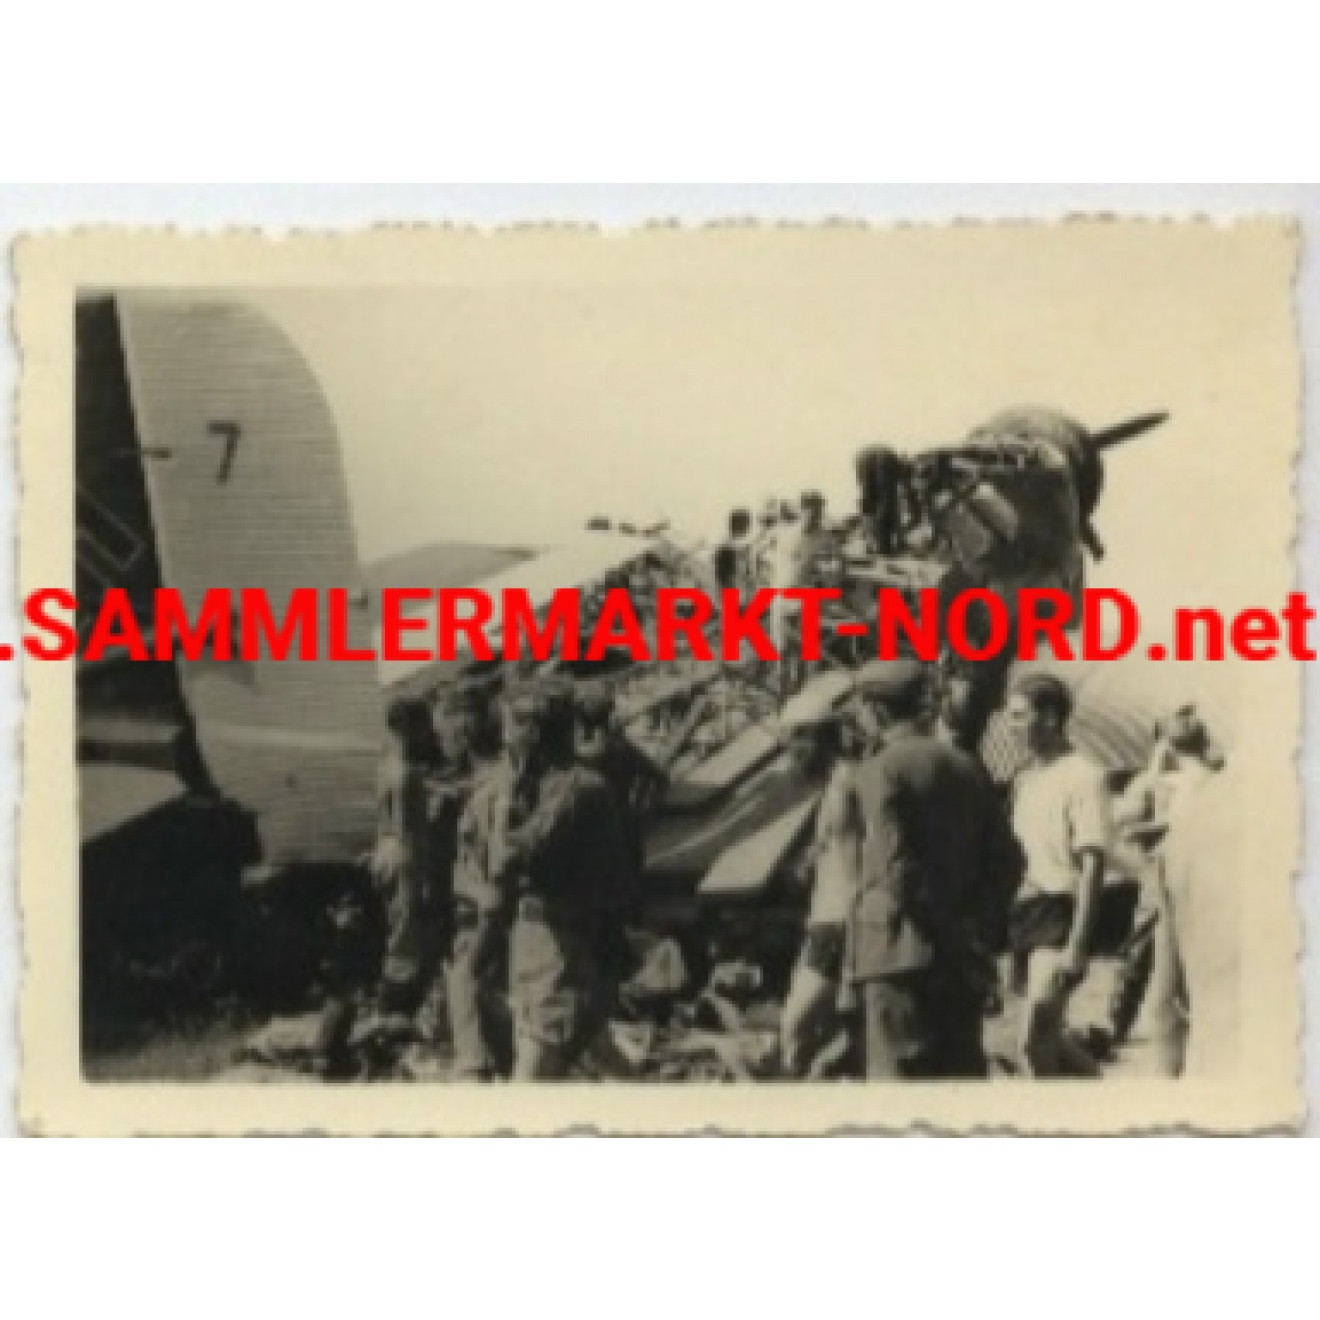 Destroyrd Ju 52 in the South